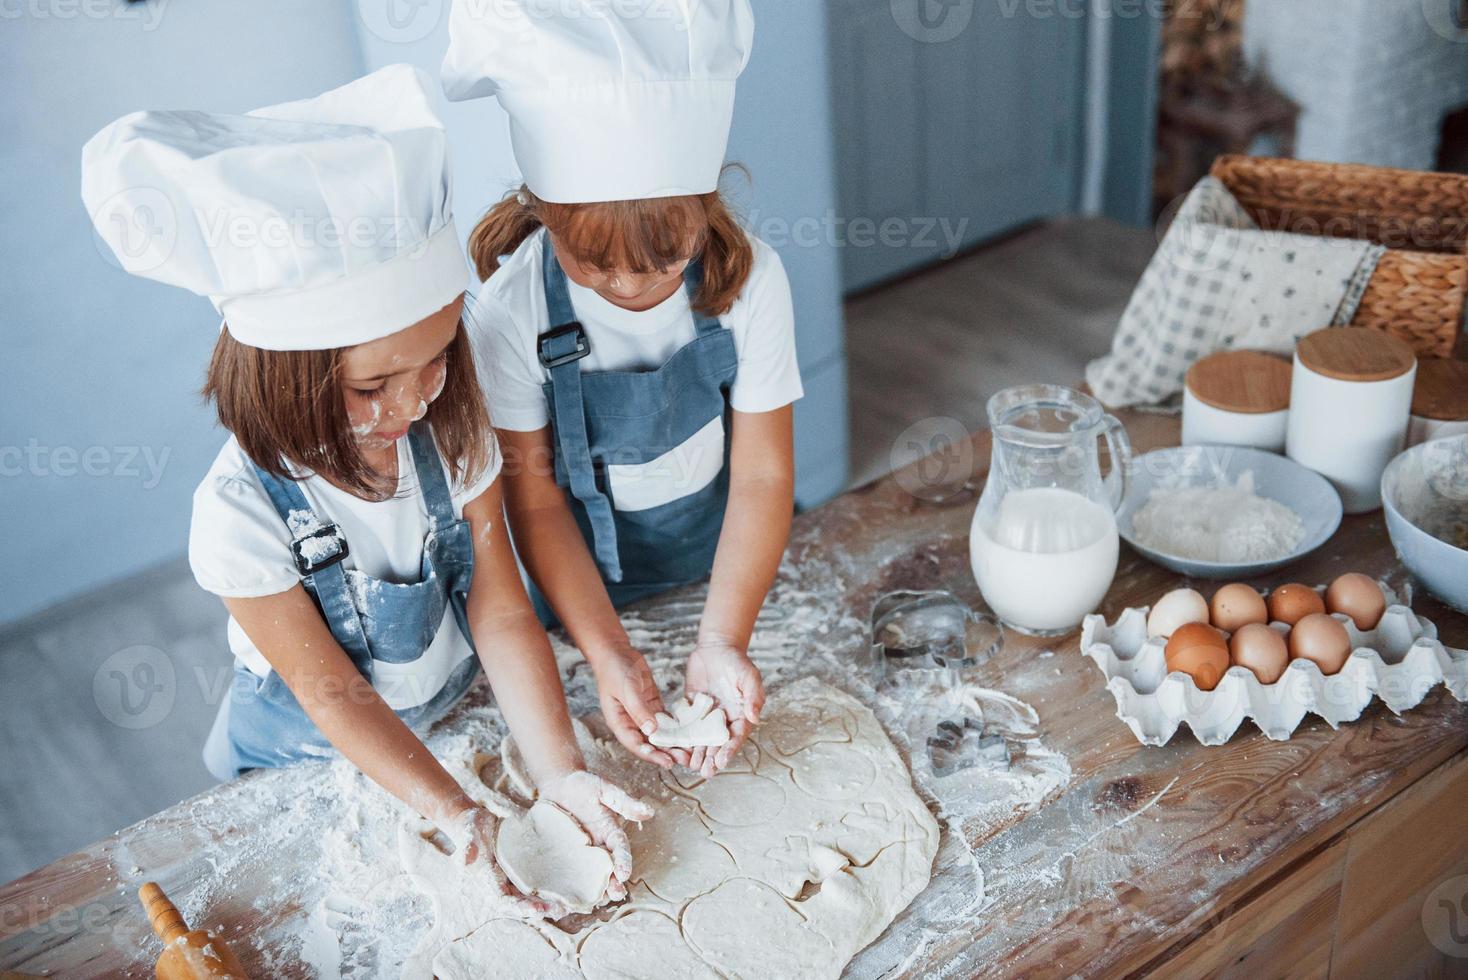 concentrando-se em cozinhar. filhos de família em uniforme de chef branco preparando comida na cozinha foto